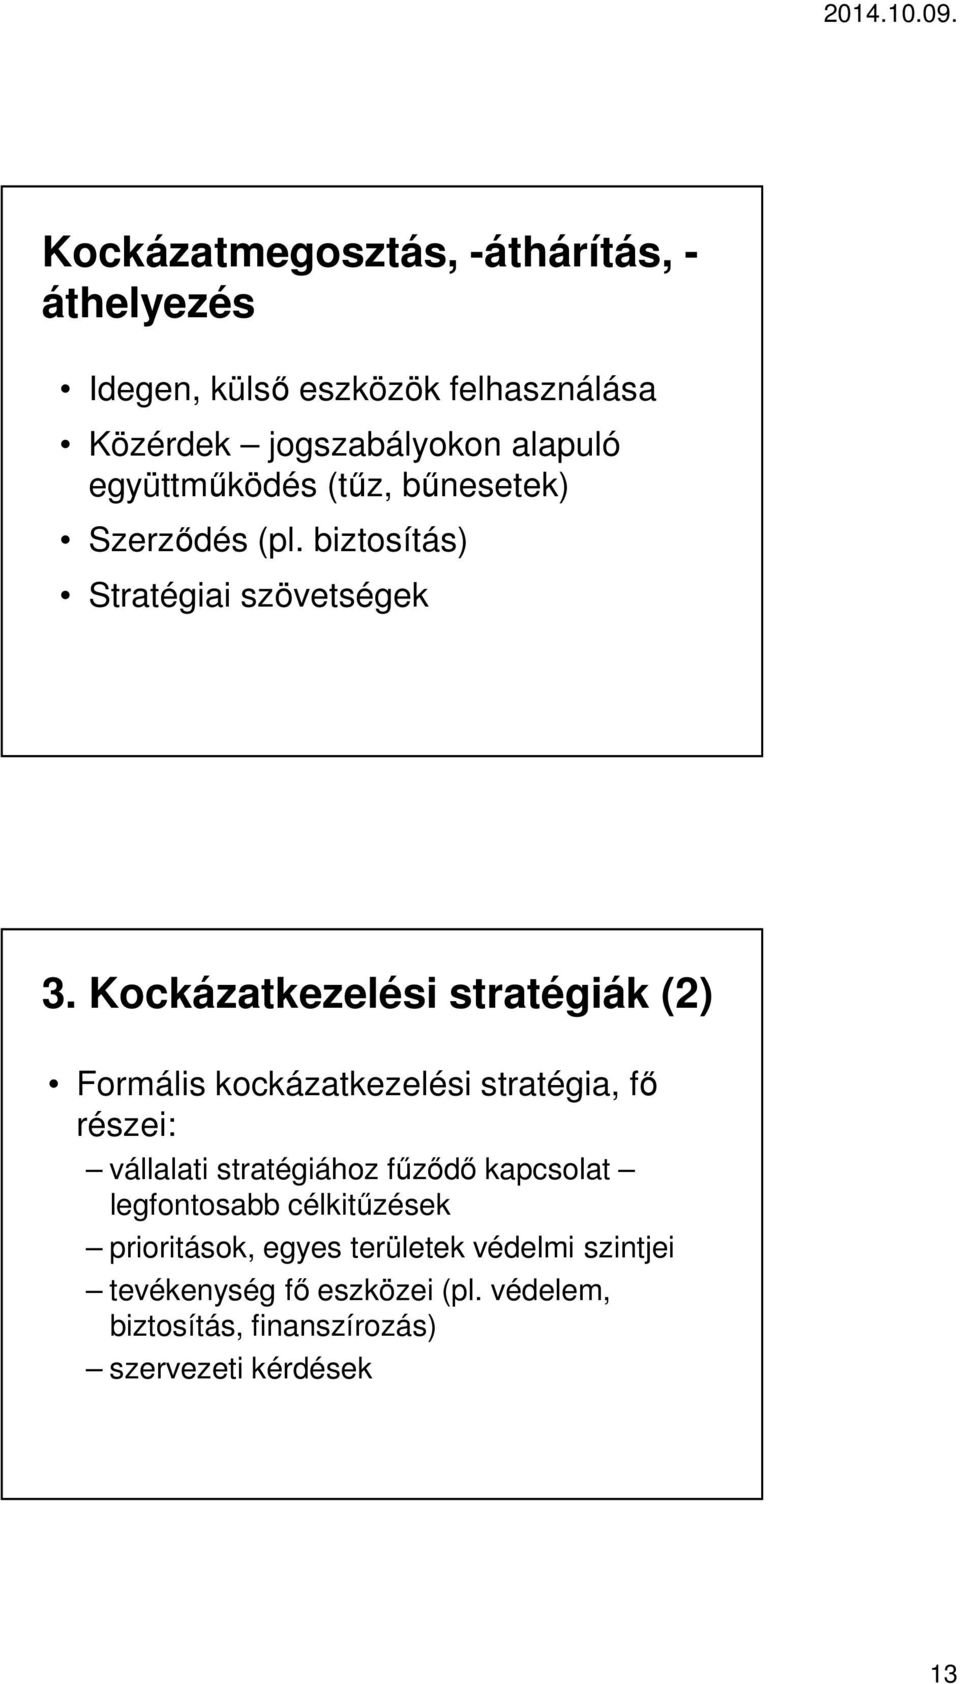 Kockázatkezelési stratégiák (2) Formális kockázatkezelési stratégia, fő részei: vállalati stratégiához fűződő